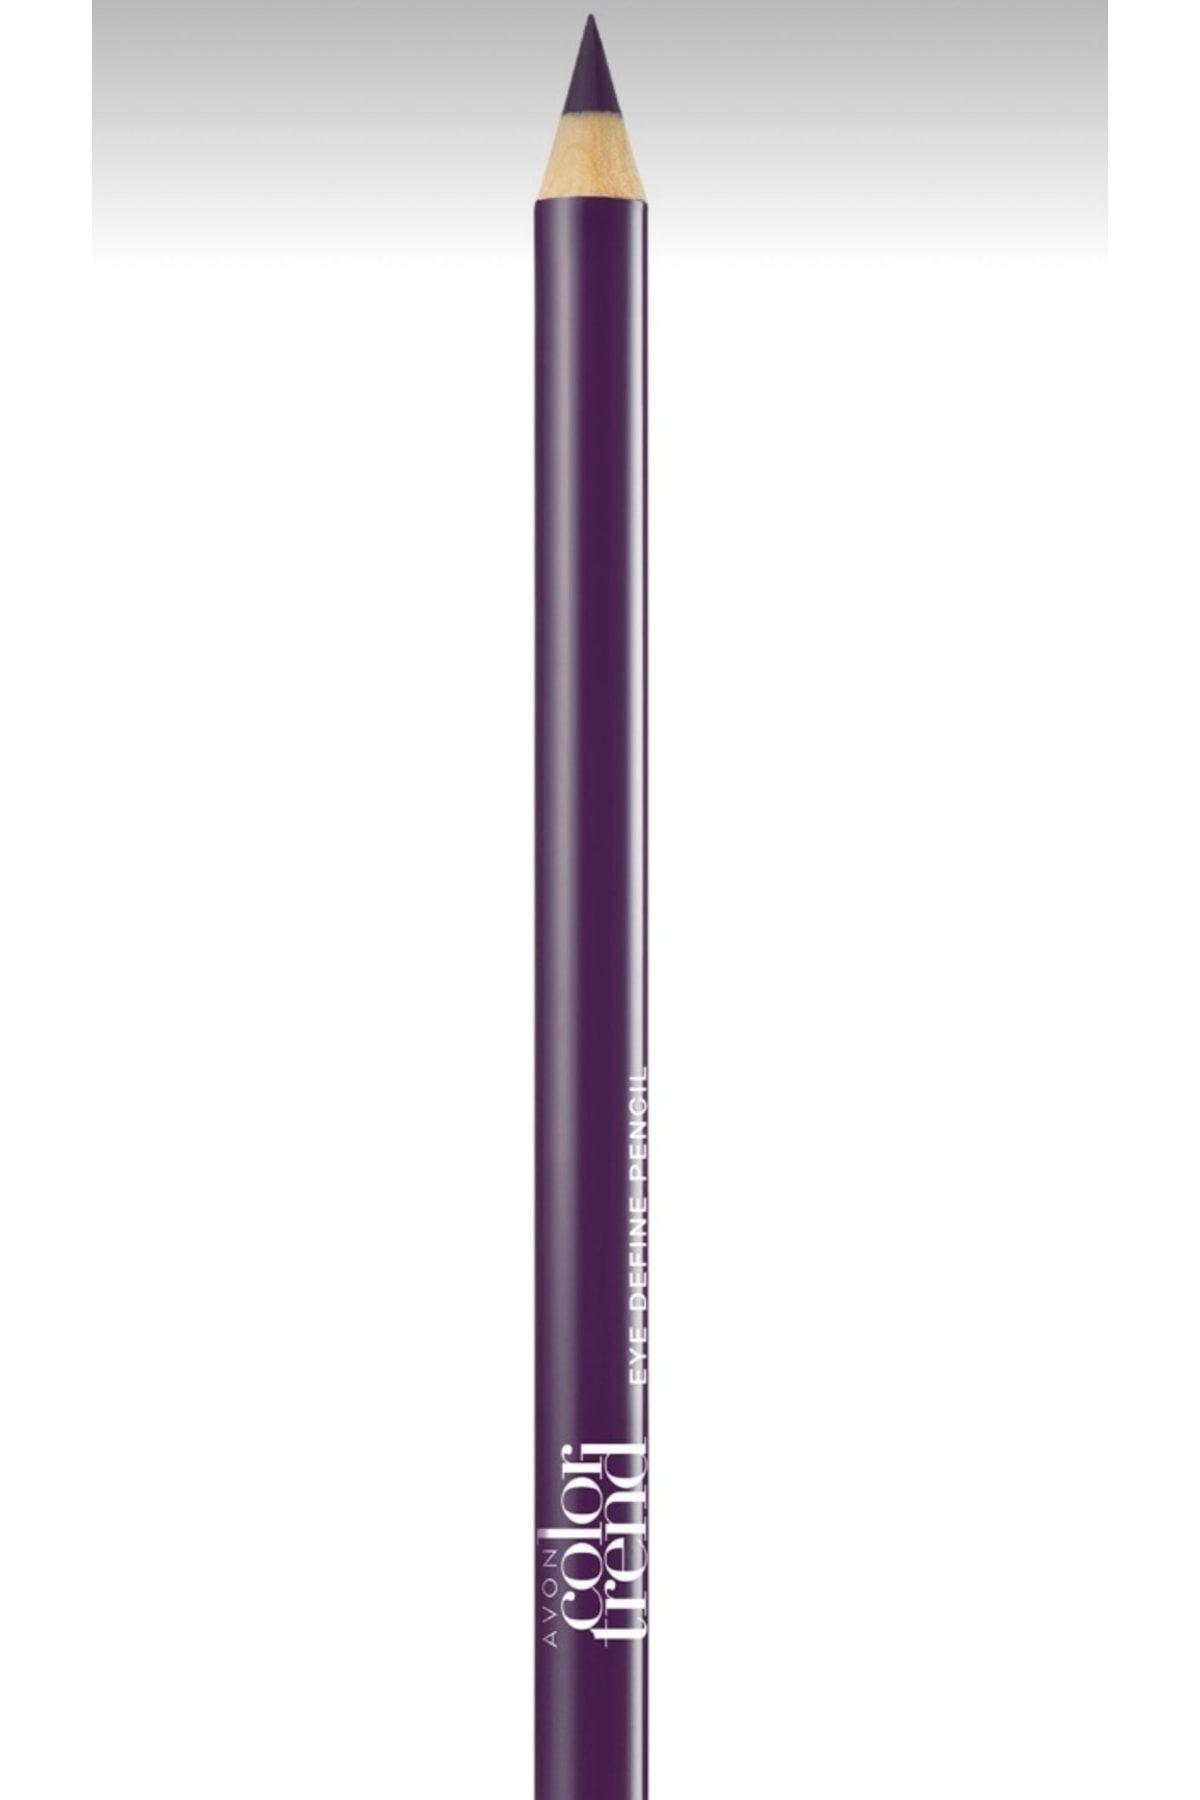 Avon Color Trend Göz Kalemi/violet